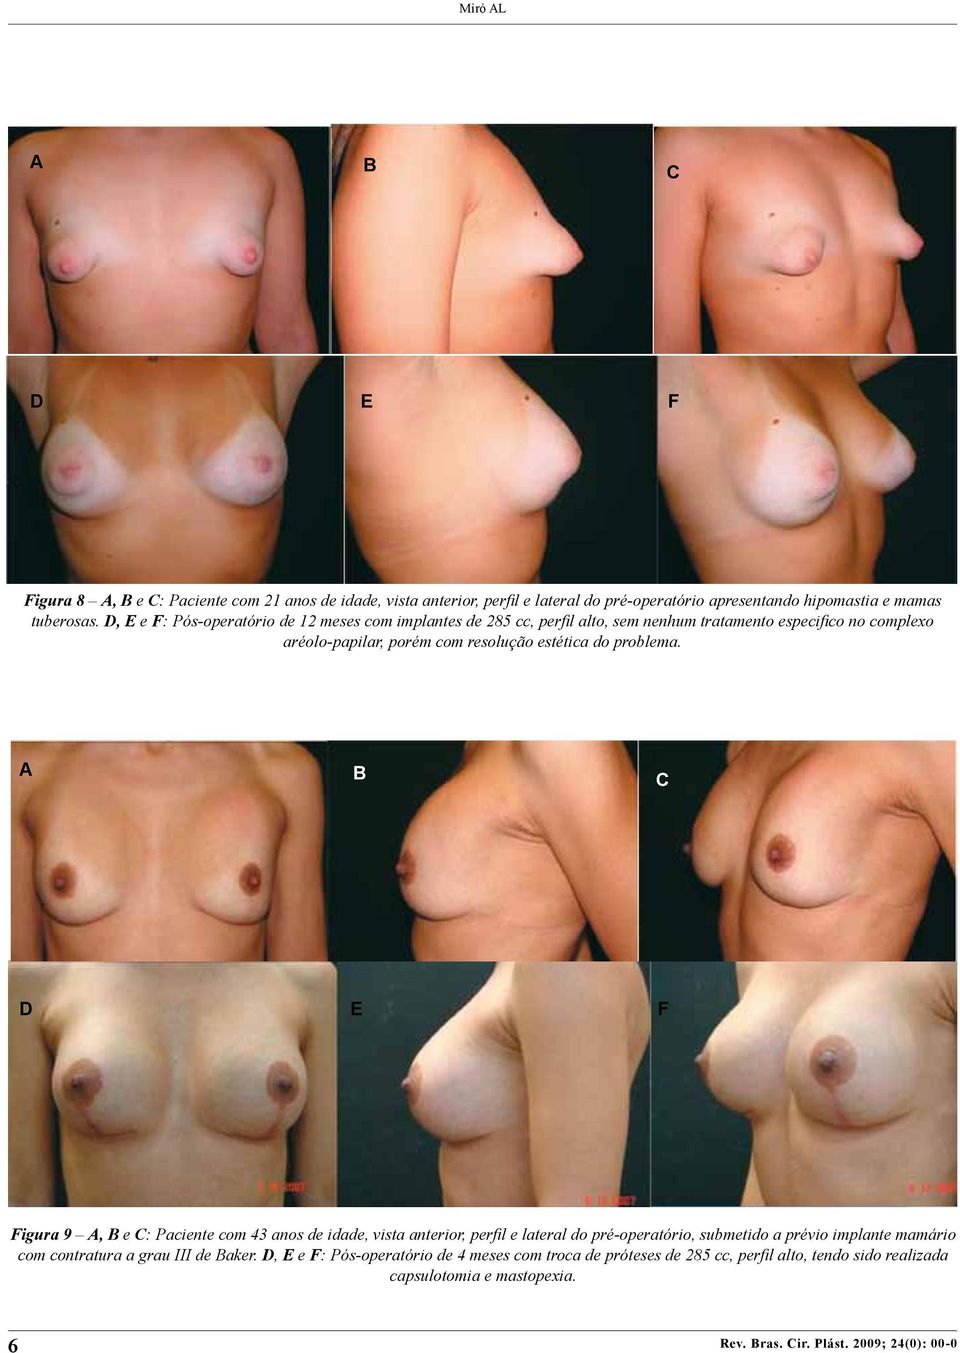 A b C D E F Figura 9 A, B e C: Paciente com 43 anos de idade, vista anterior, perfil e lateral do pré-operatório, submetido a prévio implante mamário com contratura a grau III de